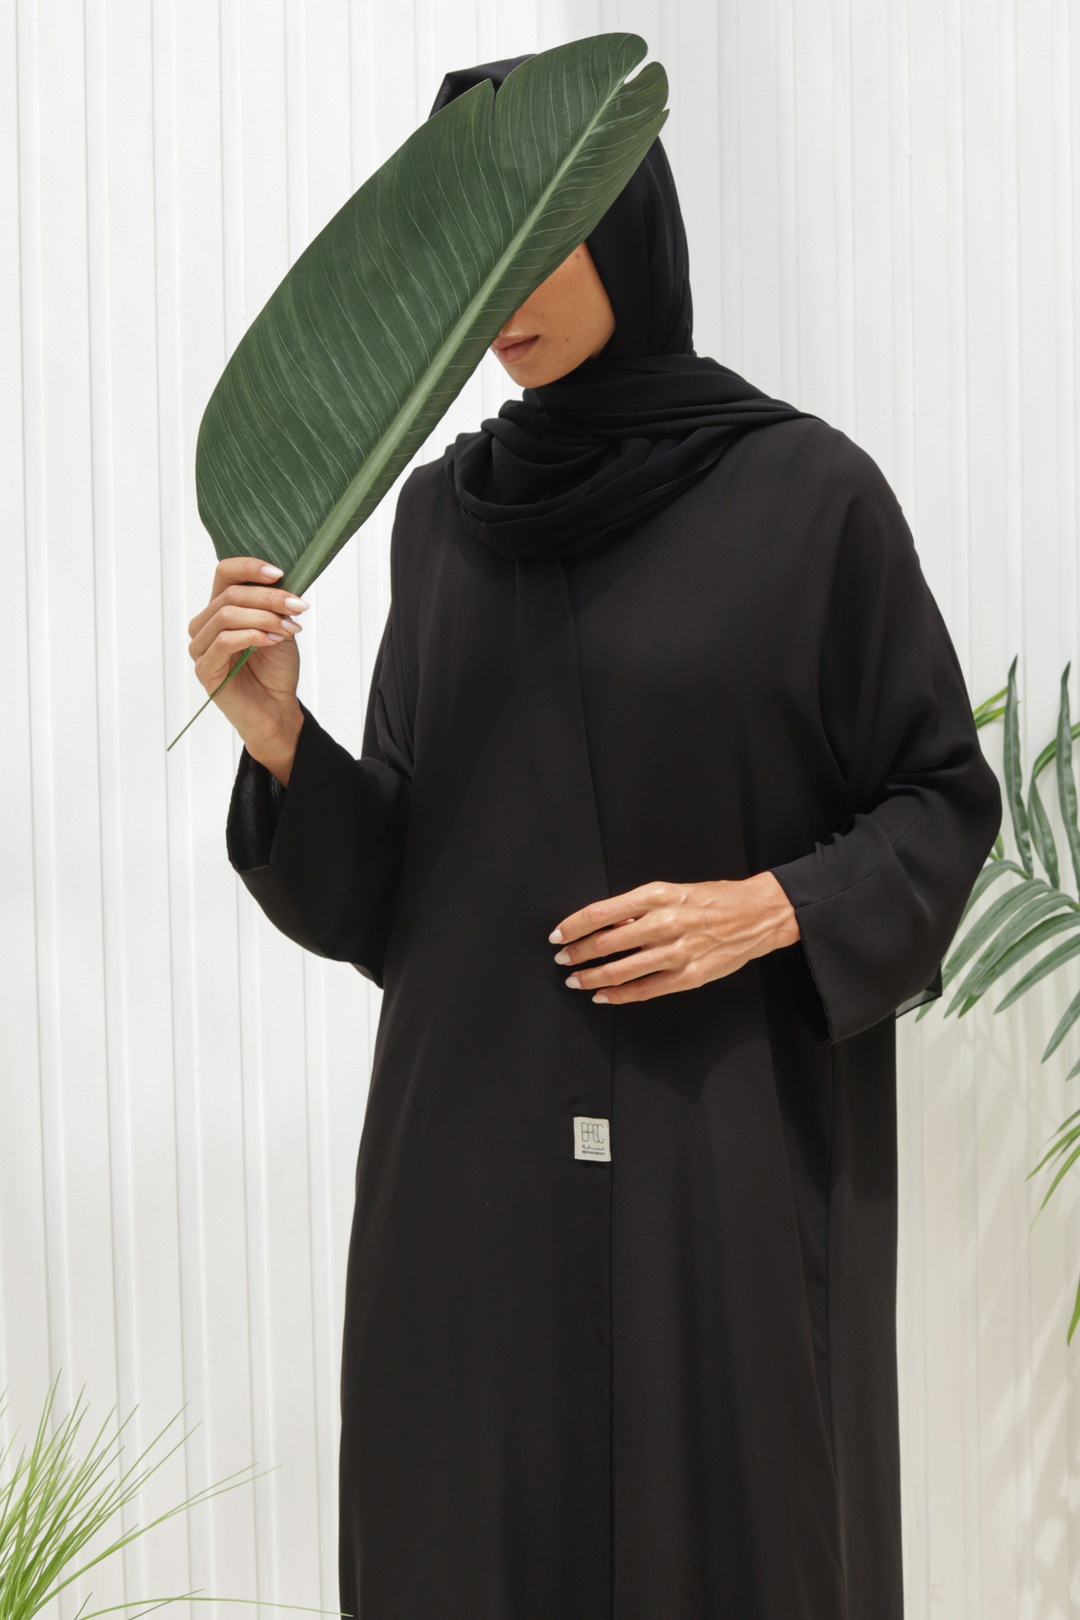 Basic Double (Black Abaya) - Ready to Wear